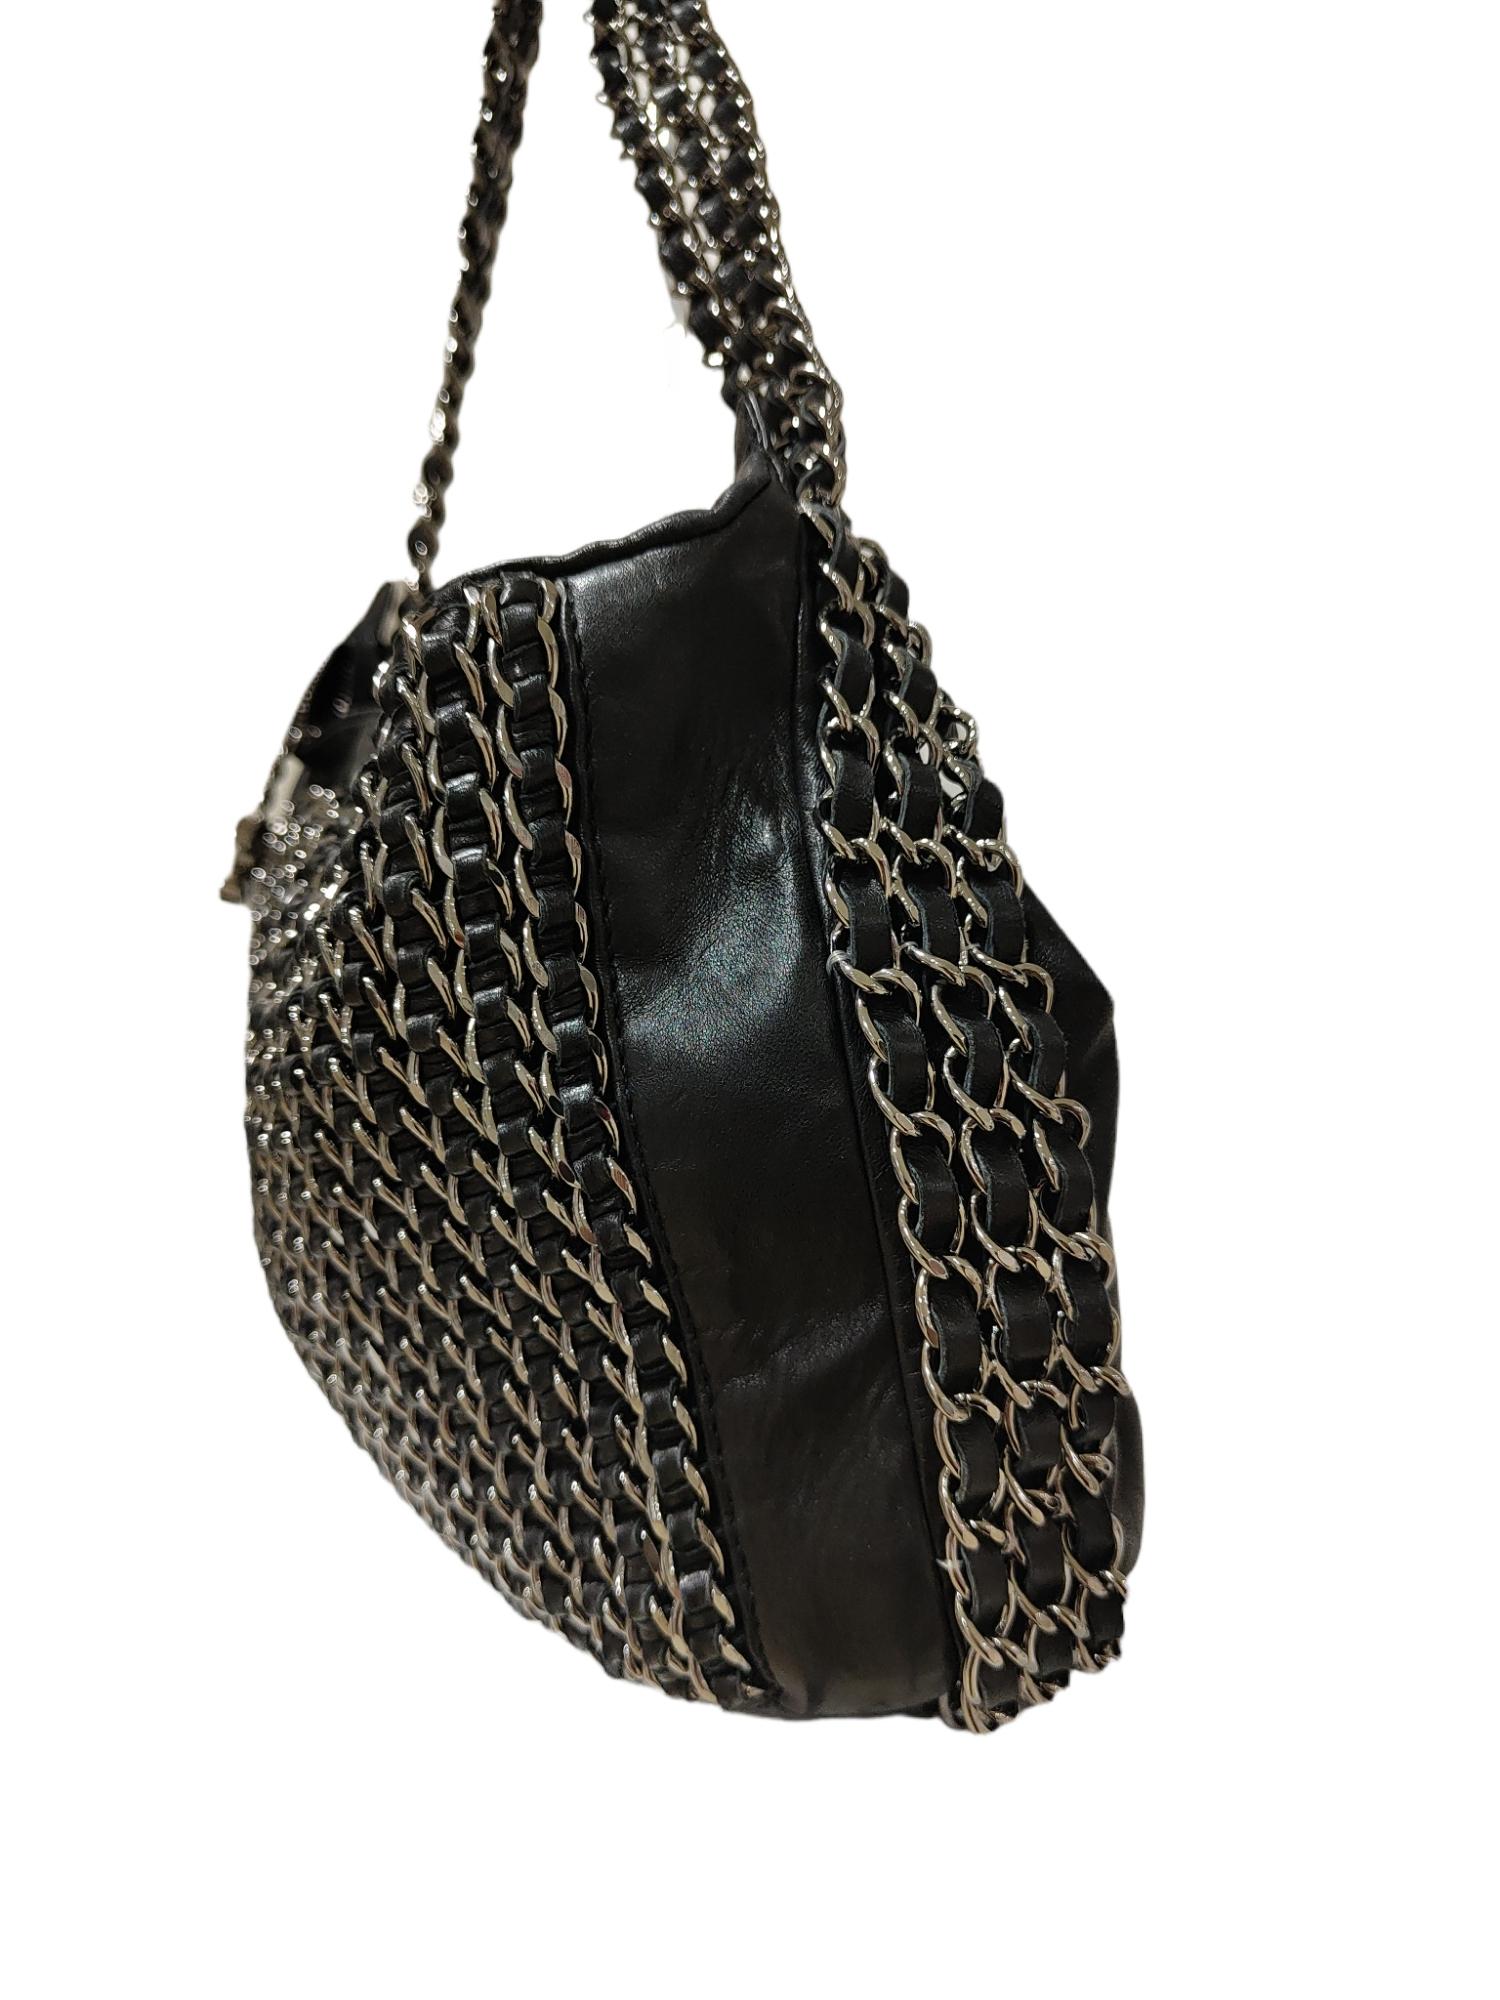 Chanel Black leather chain shoulder bag 1